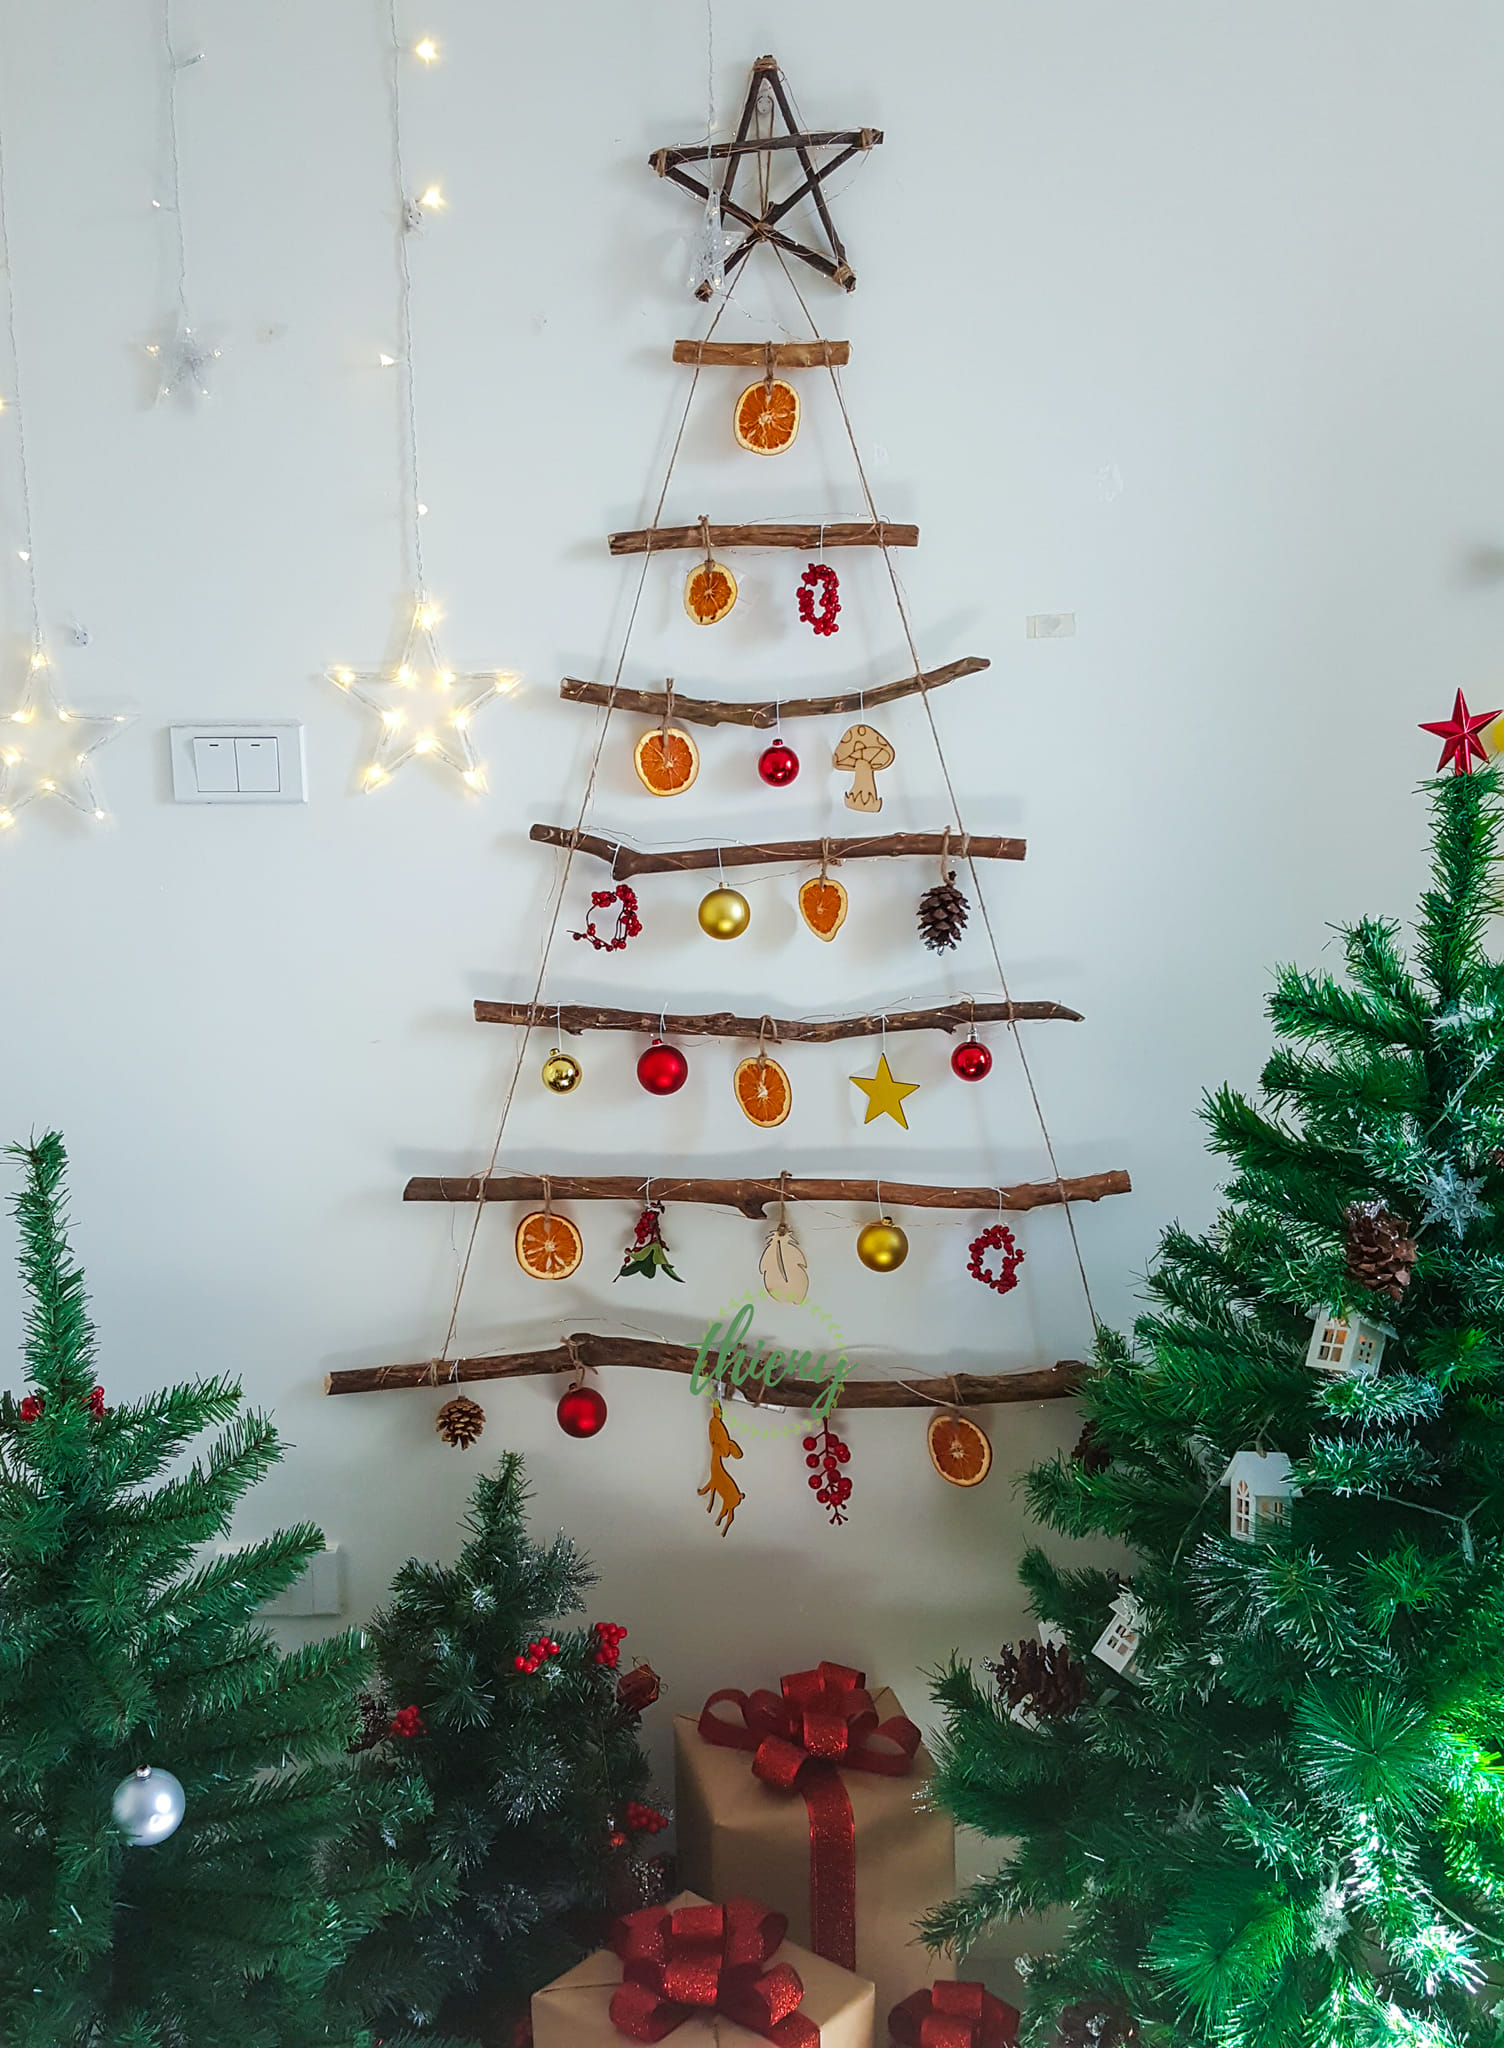 Đây chắc chắn là cây thông Noel 1-0-2 đẹp nhất mà bạn từng được thấy! Sử dụng vật liệu chất lượng cao, đội ngũ thiết kế tài năng đã tạo ra một sản phẩm độc đáo, mang đến điểm nhấn hoàn hảo cho không gian Giáng sinh của bạn. Hãy thử sức với chiếc cây thông Noel xinh này và cảm nhận sự thích thú khi đón chào mùa Lễ hội.